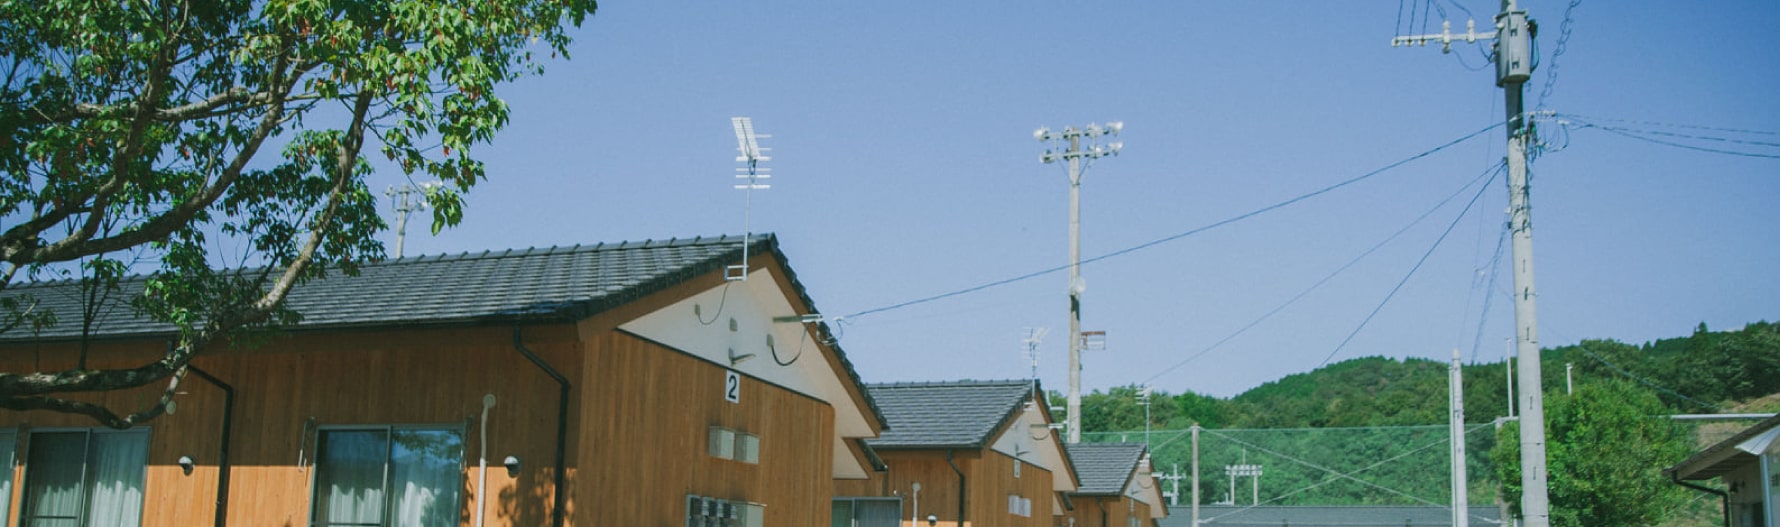 熊本の仮設住宅の写真